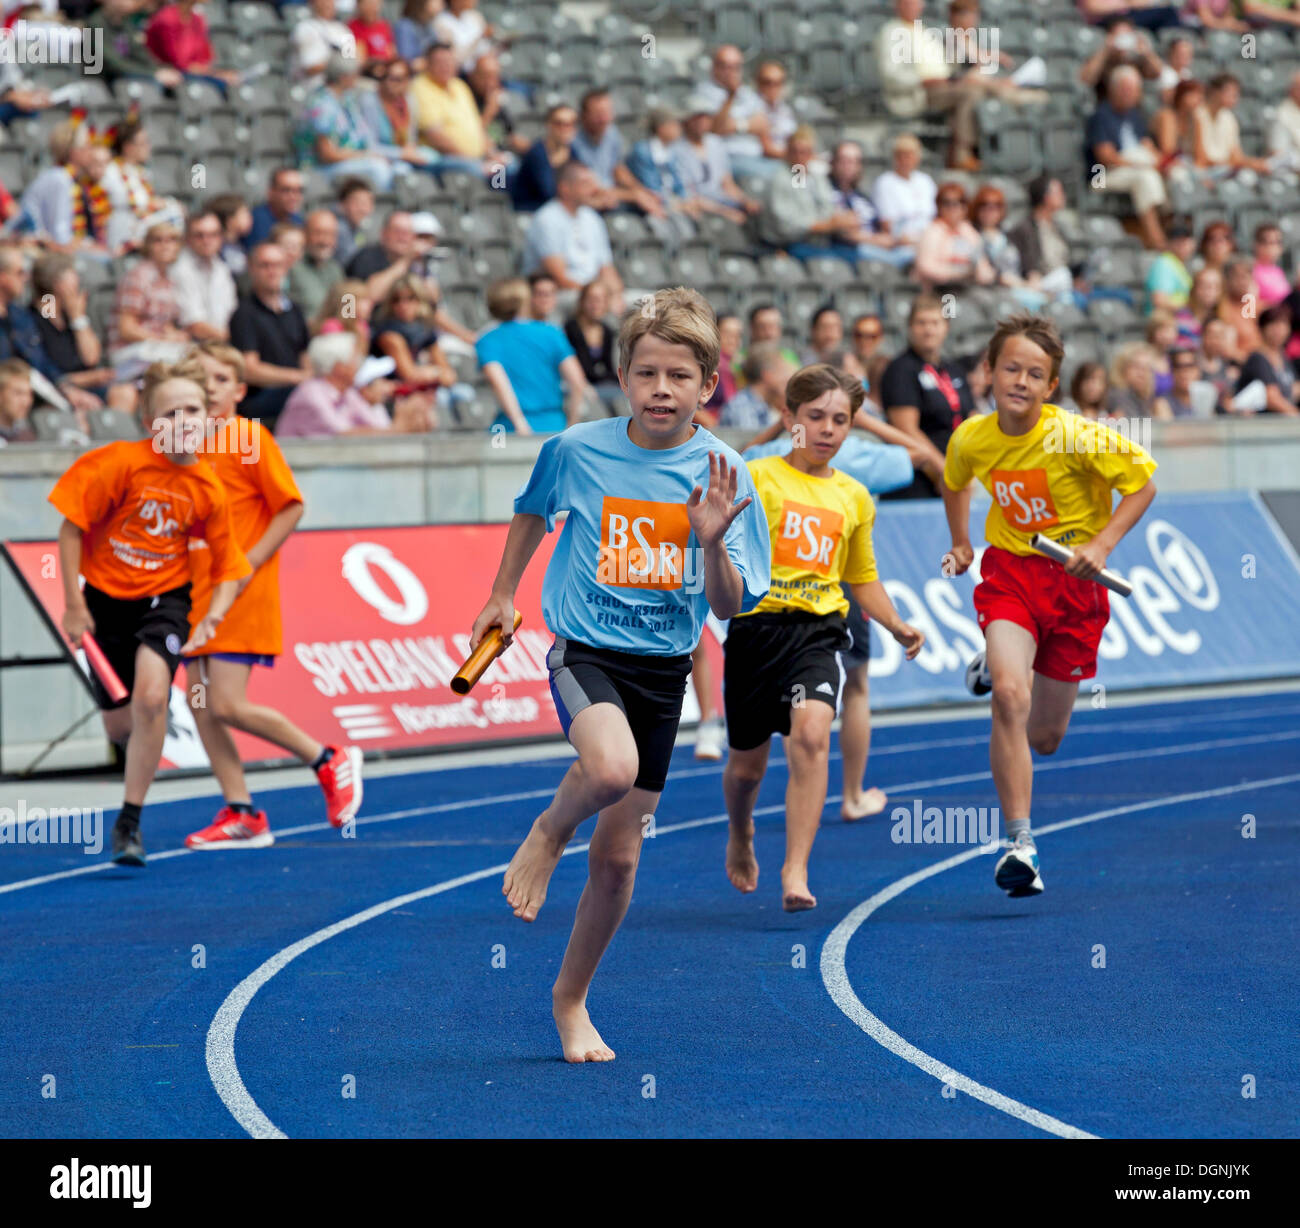 Sportliche Kinder von Berliner Schulen, die Teilnahme an einer laufenden Wettbewerb beim ISTAF 2012 im Olympiastadion, Berlin Stockfoto